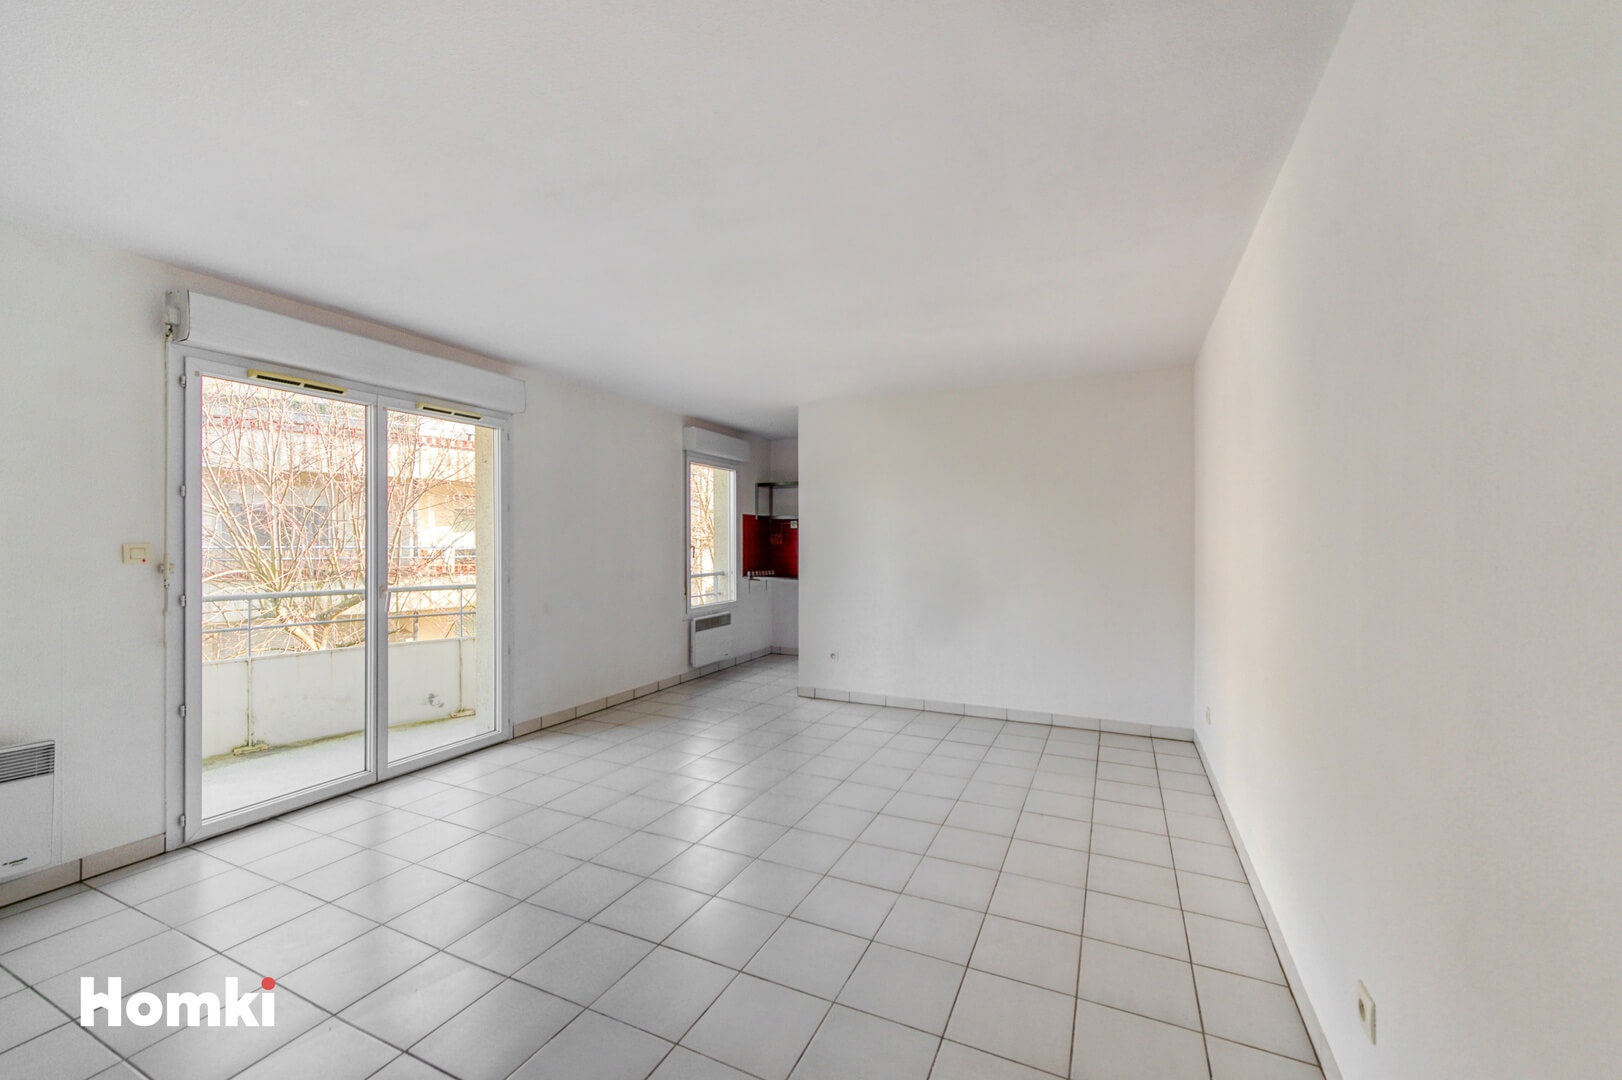 Homki - Vente Appartement  de 59.0 m² à Saint-Orens-de-Gameville 31650